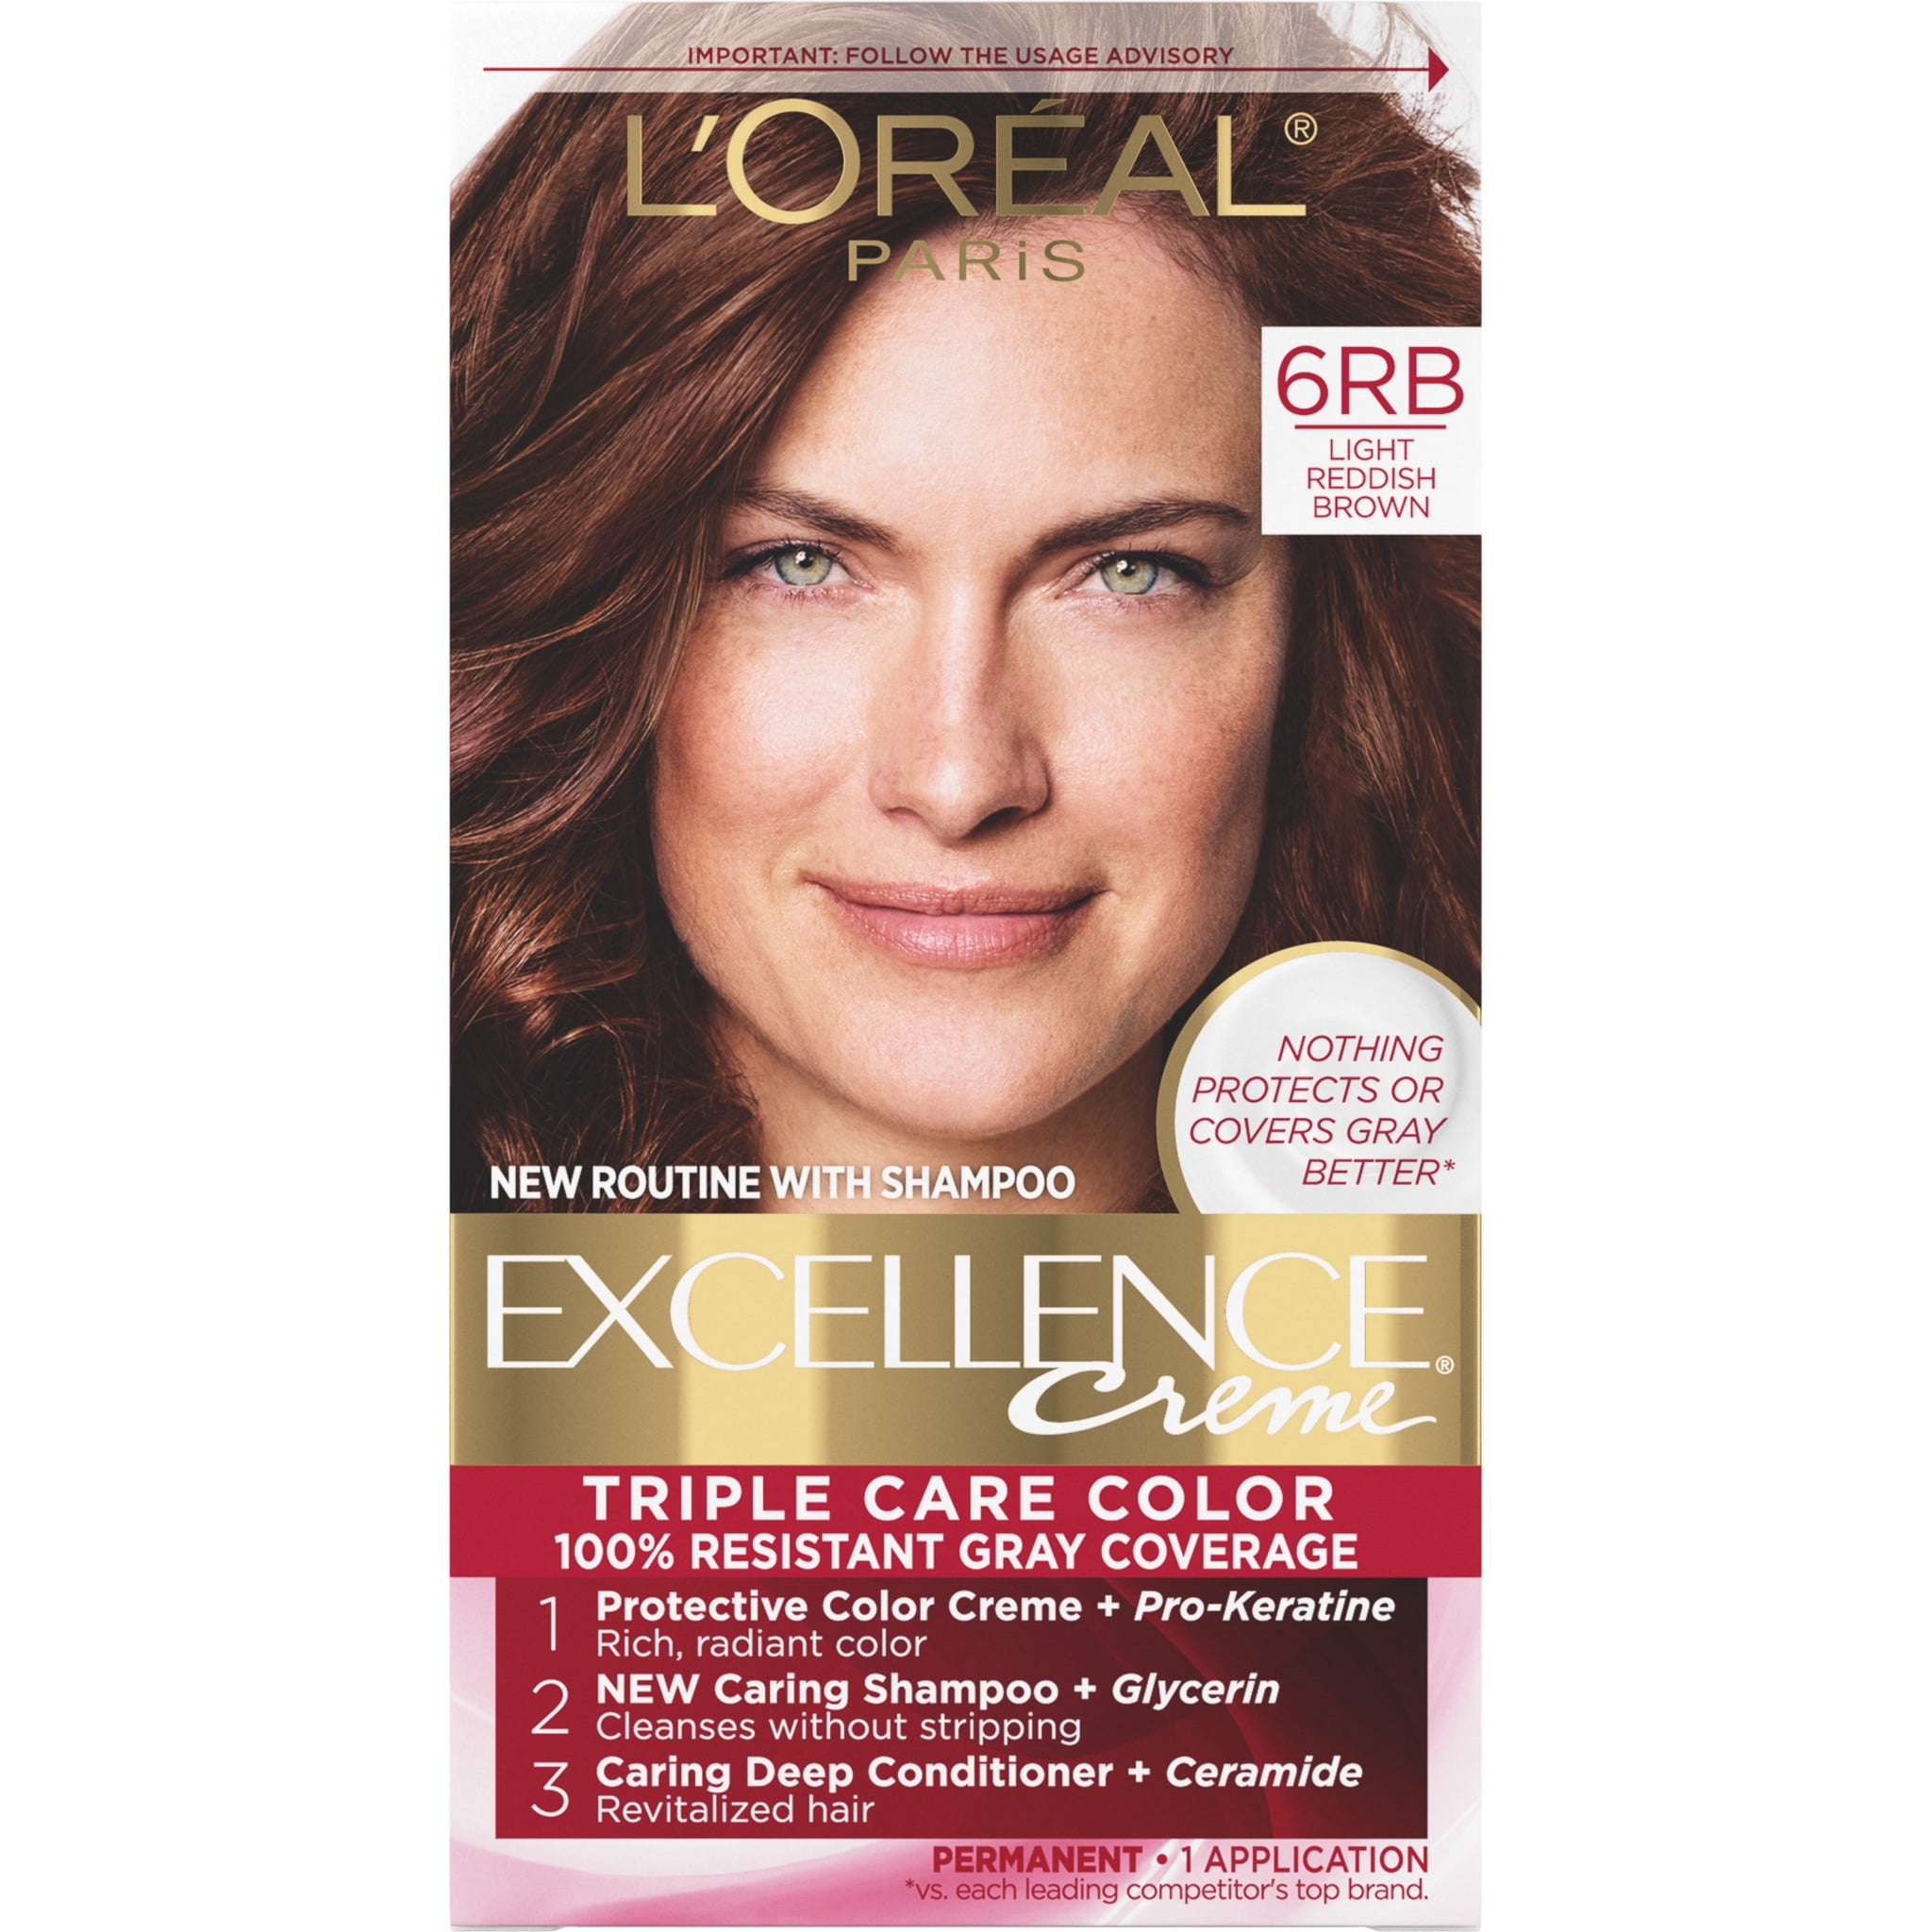 L'Oreal Paris Excellence Creme Permanent Hair Color, 6RB Light Reddish Brown  